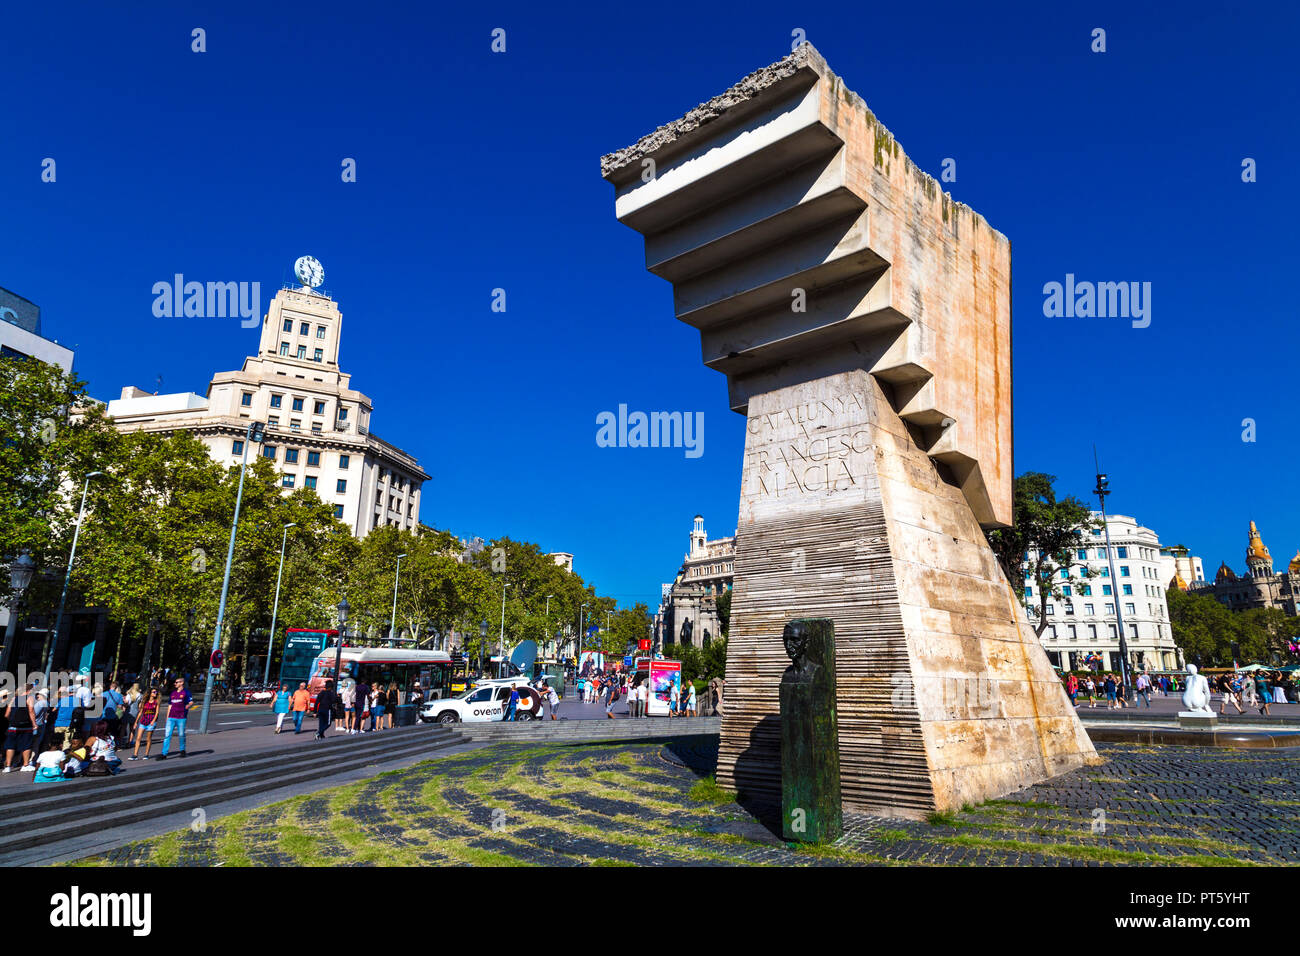 Monument à Francesc Macià leader politique catalane par le sculpteur Josep Maria Subirachs, Plaça de Catalunya, Barcelone, Espagne Banque D'Images